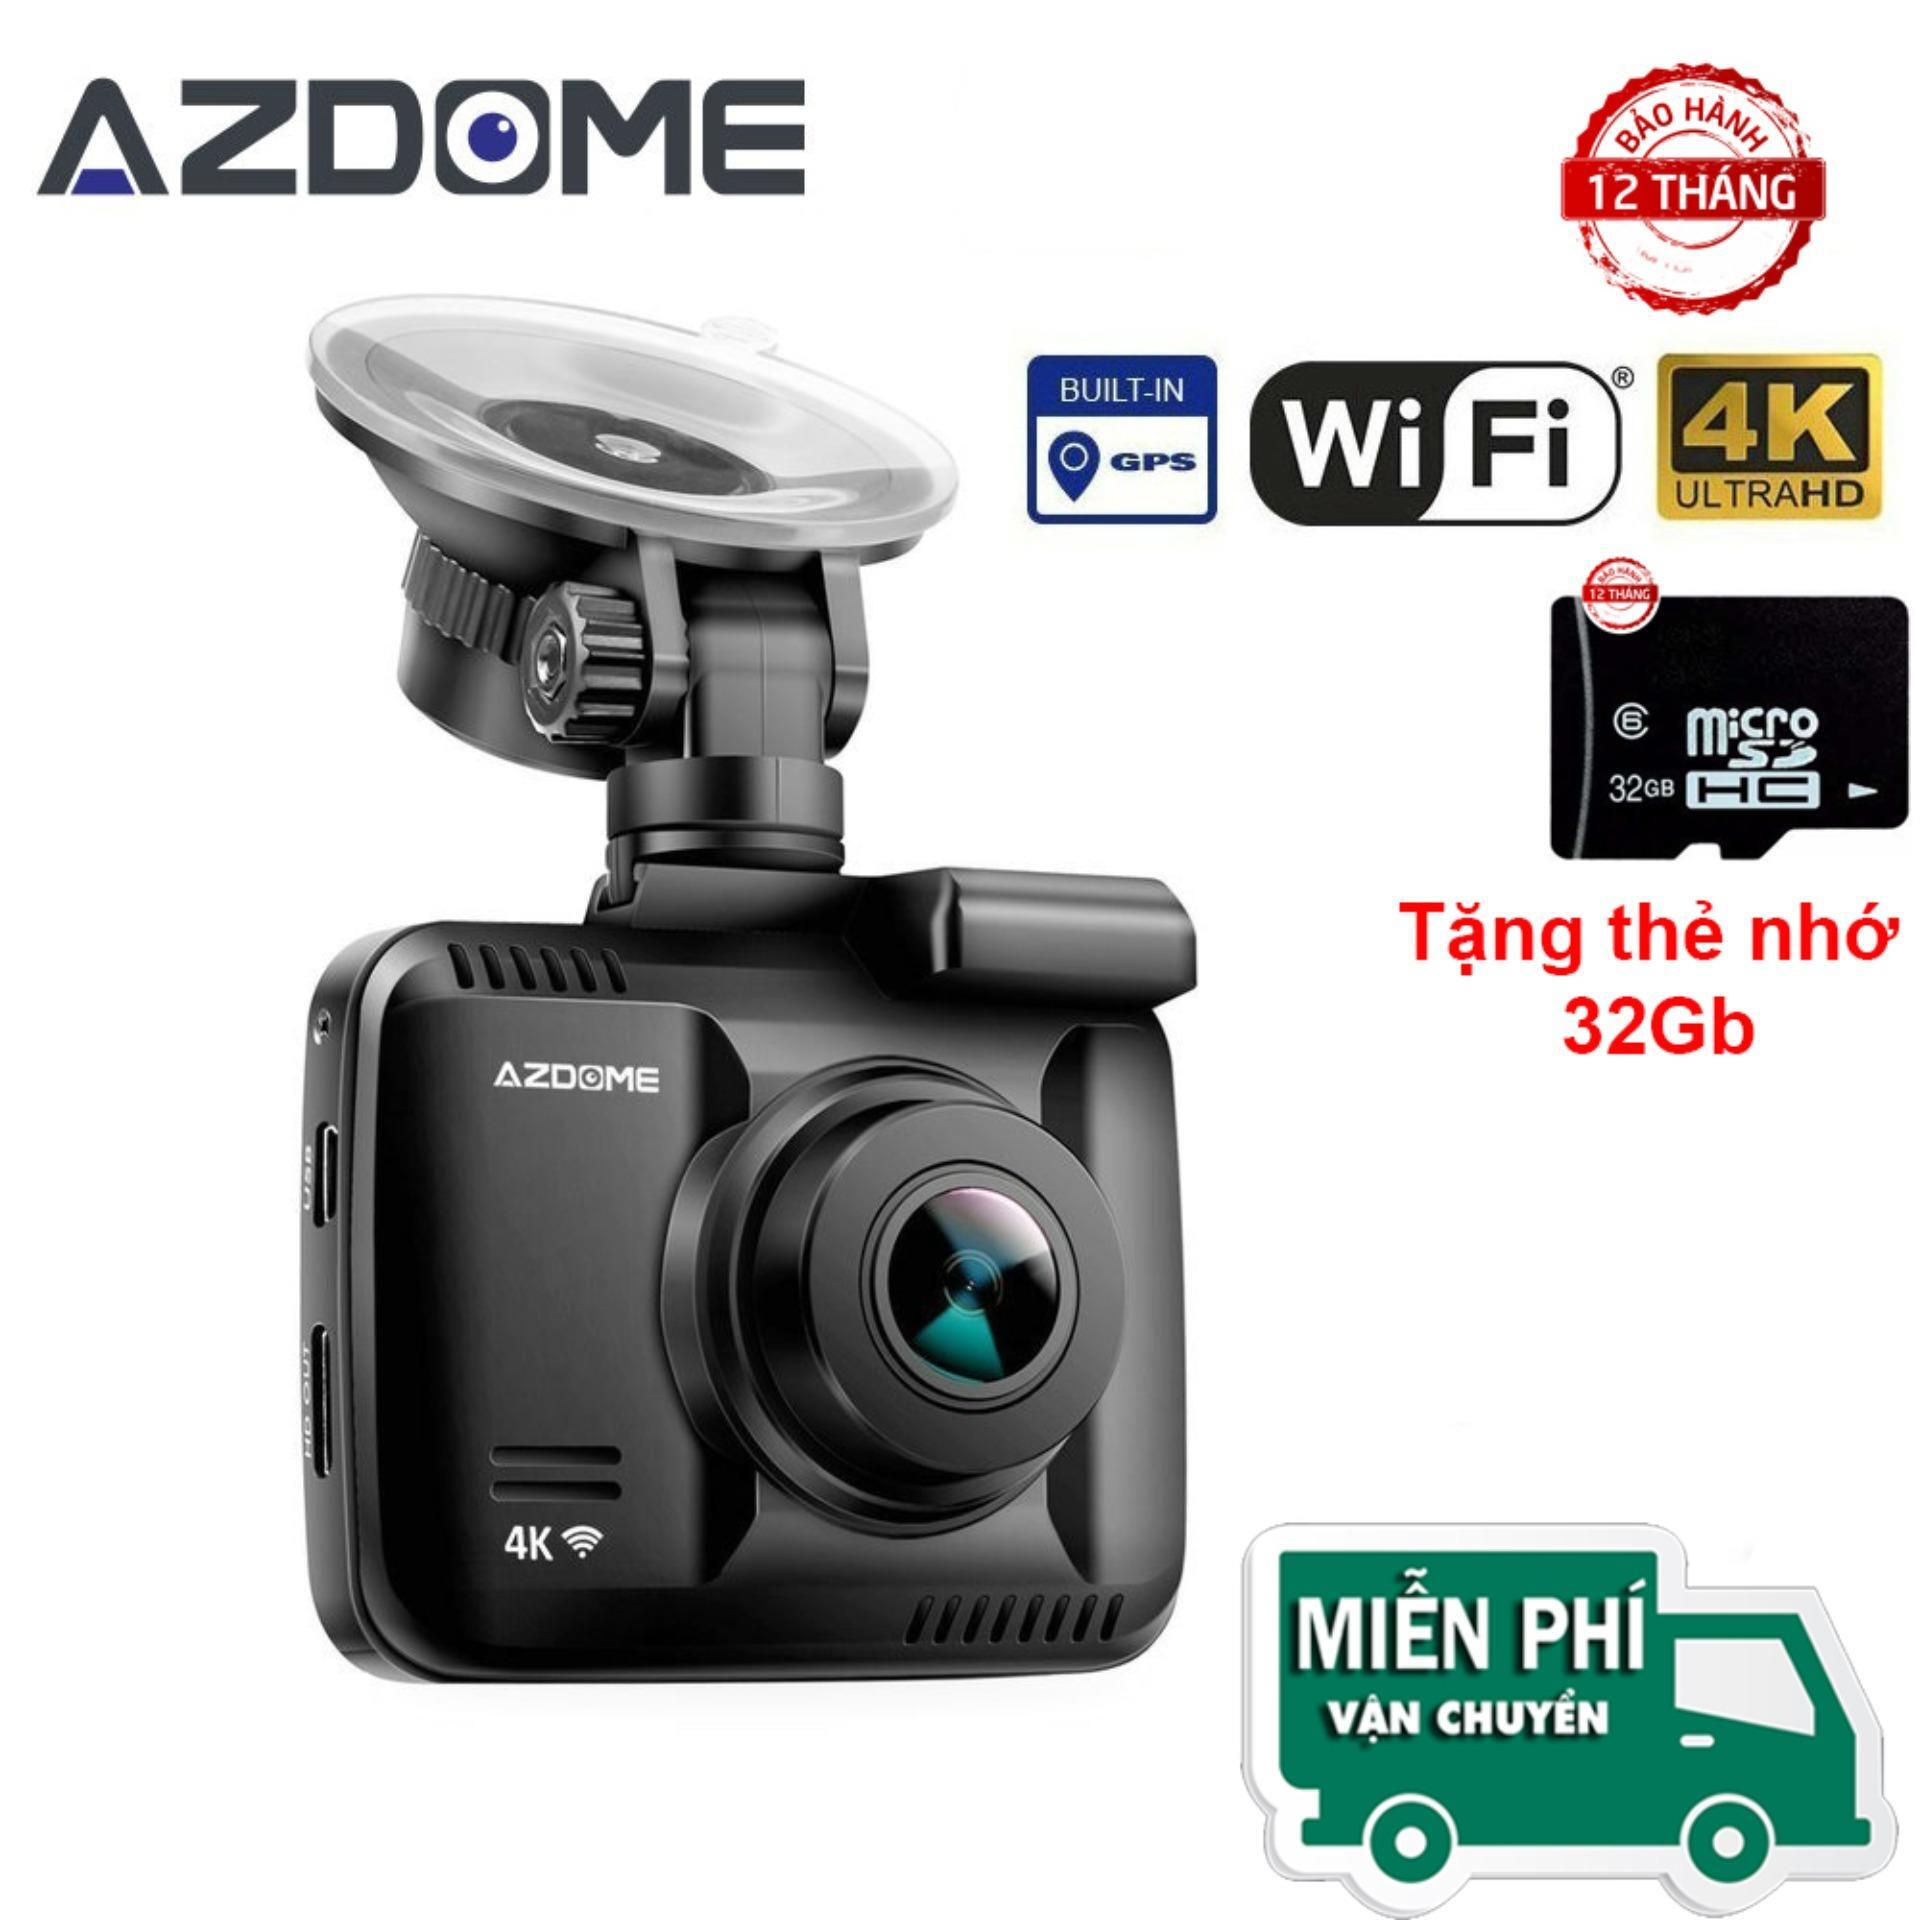 Camera hành trình Azdome GS63H - 4K, Wifi, GPS